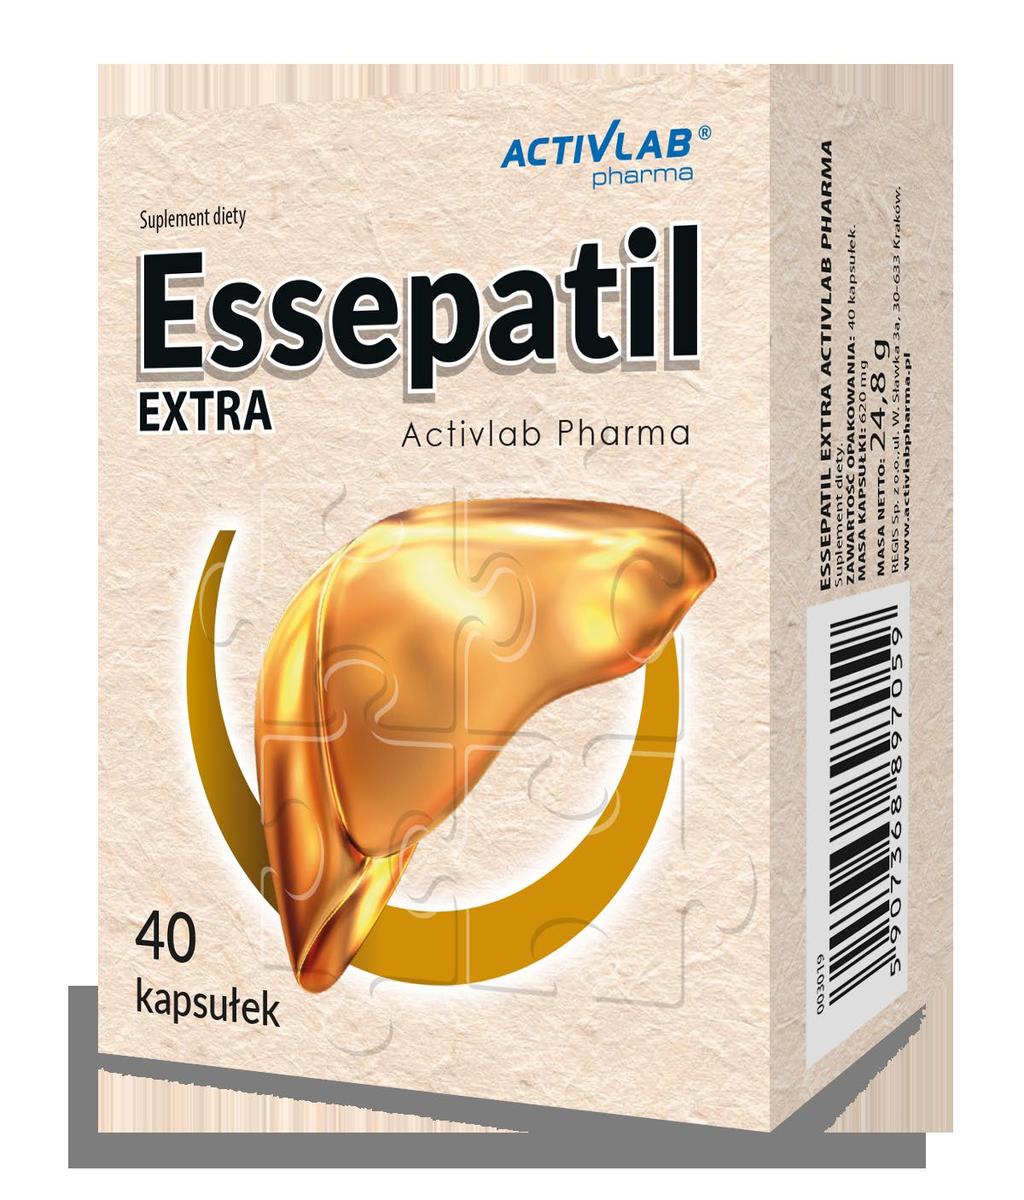 Essepatil EXTRA 40 kapsułek Pomaga w prawidłowym funkcjonowaniu wątroby To suplement diety zawierający fosfolipidy sojowe, służący do uzupełniania diety w substancje korzystnie wpływające na